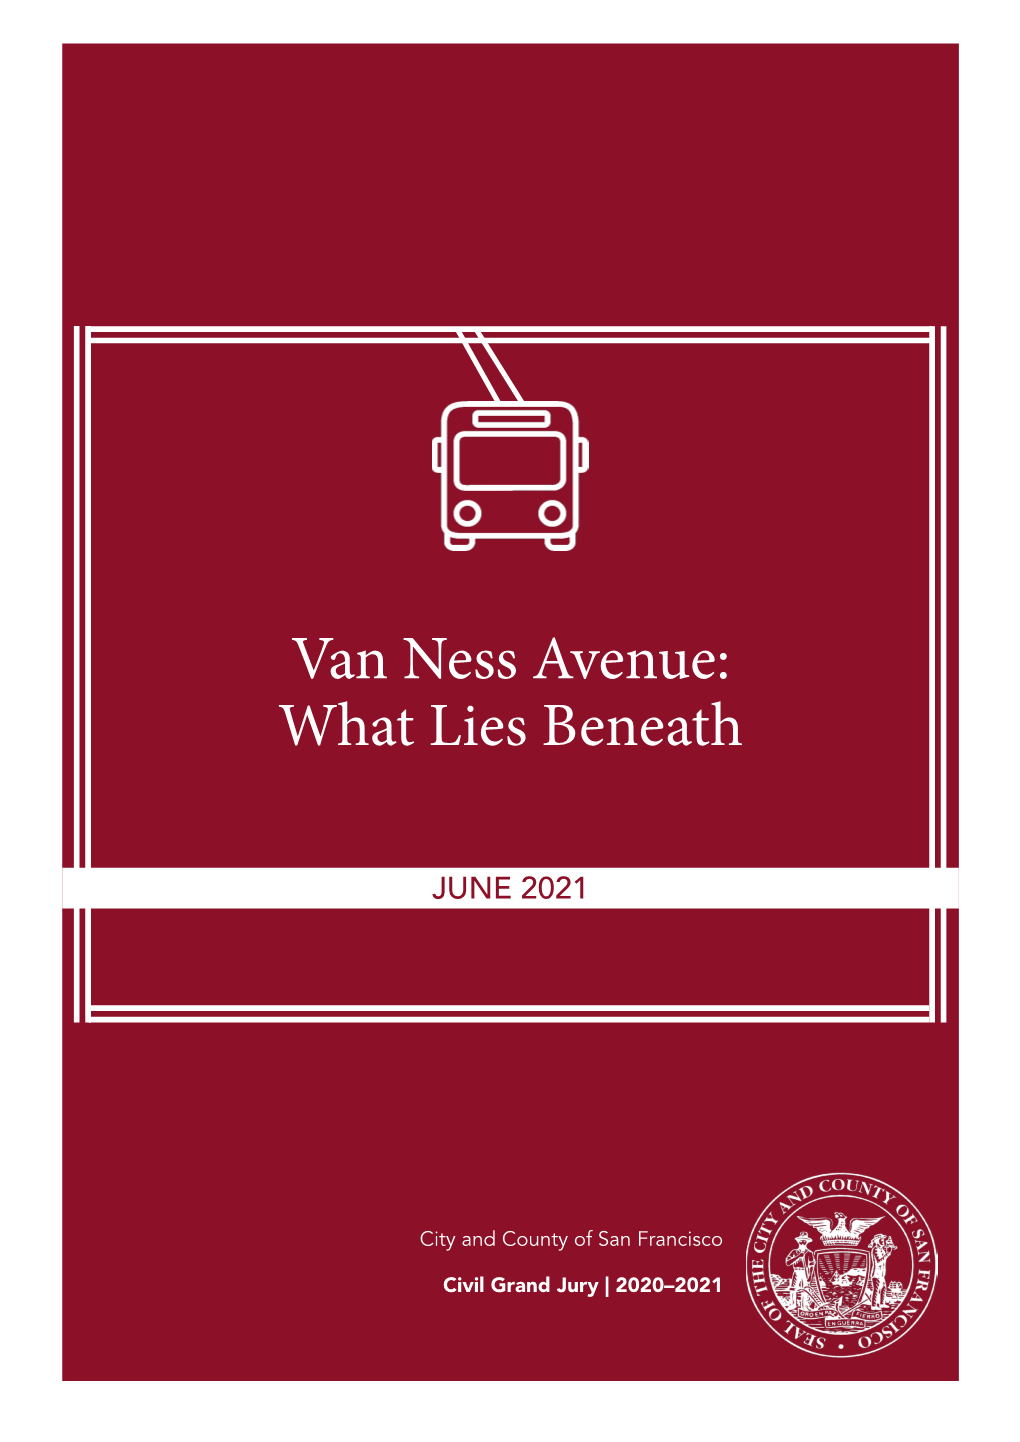 Van Ness Avenue: What Lies Beneath